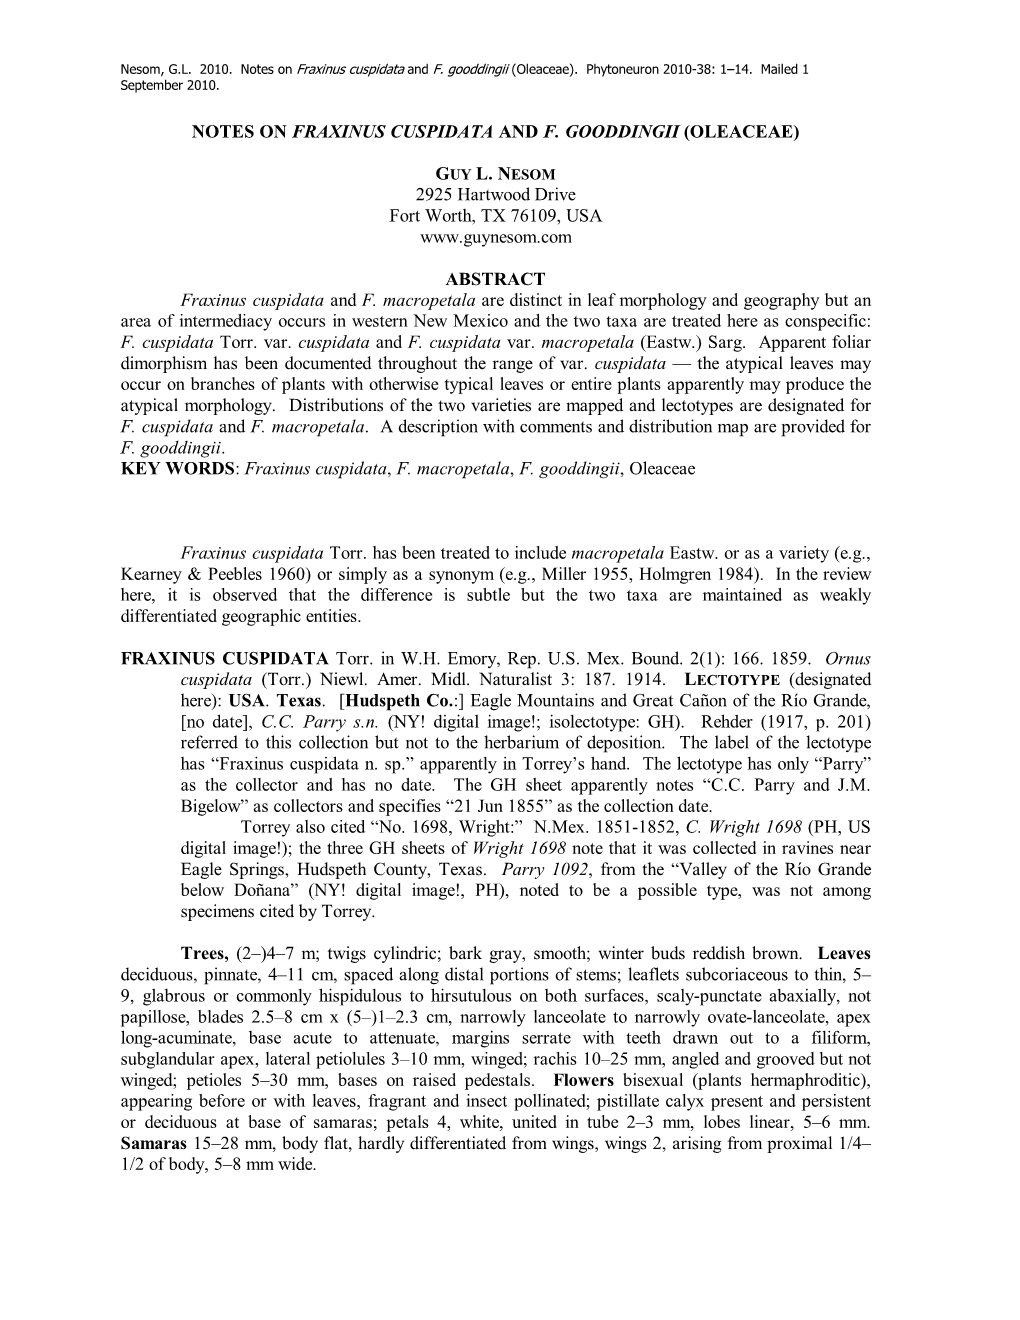 Notes on Fraxinus Cuspidata and F. Gooddingii (Oleaceae)